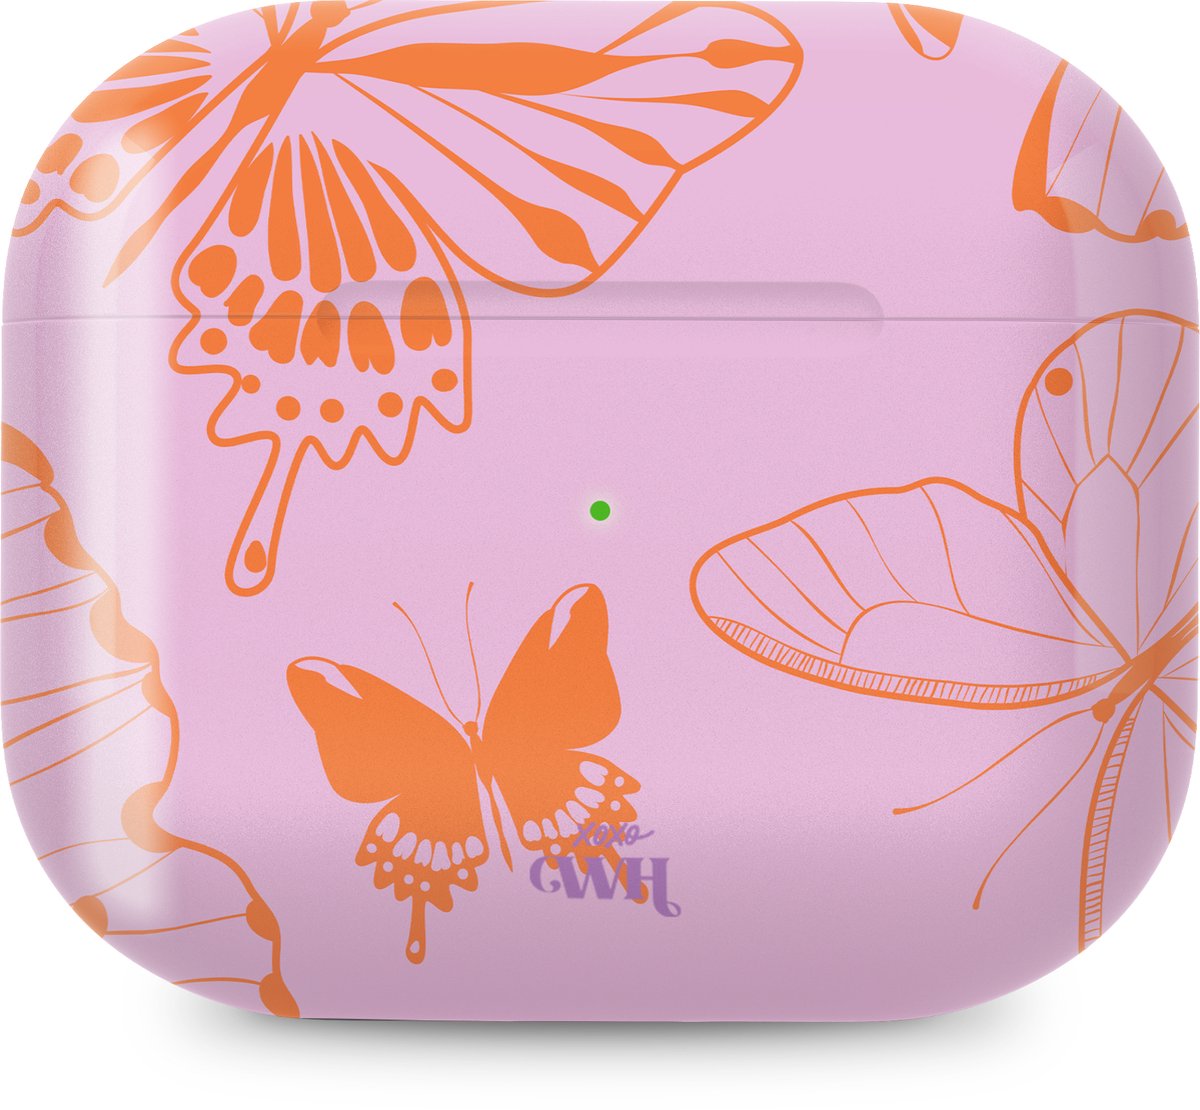 Airpods Pro 1/2 hoesje - Give Me Butterflies - Roze - Oranje - Siliconen - Airpods hoesje - Airpods Pro 1/2 case